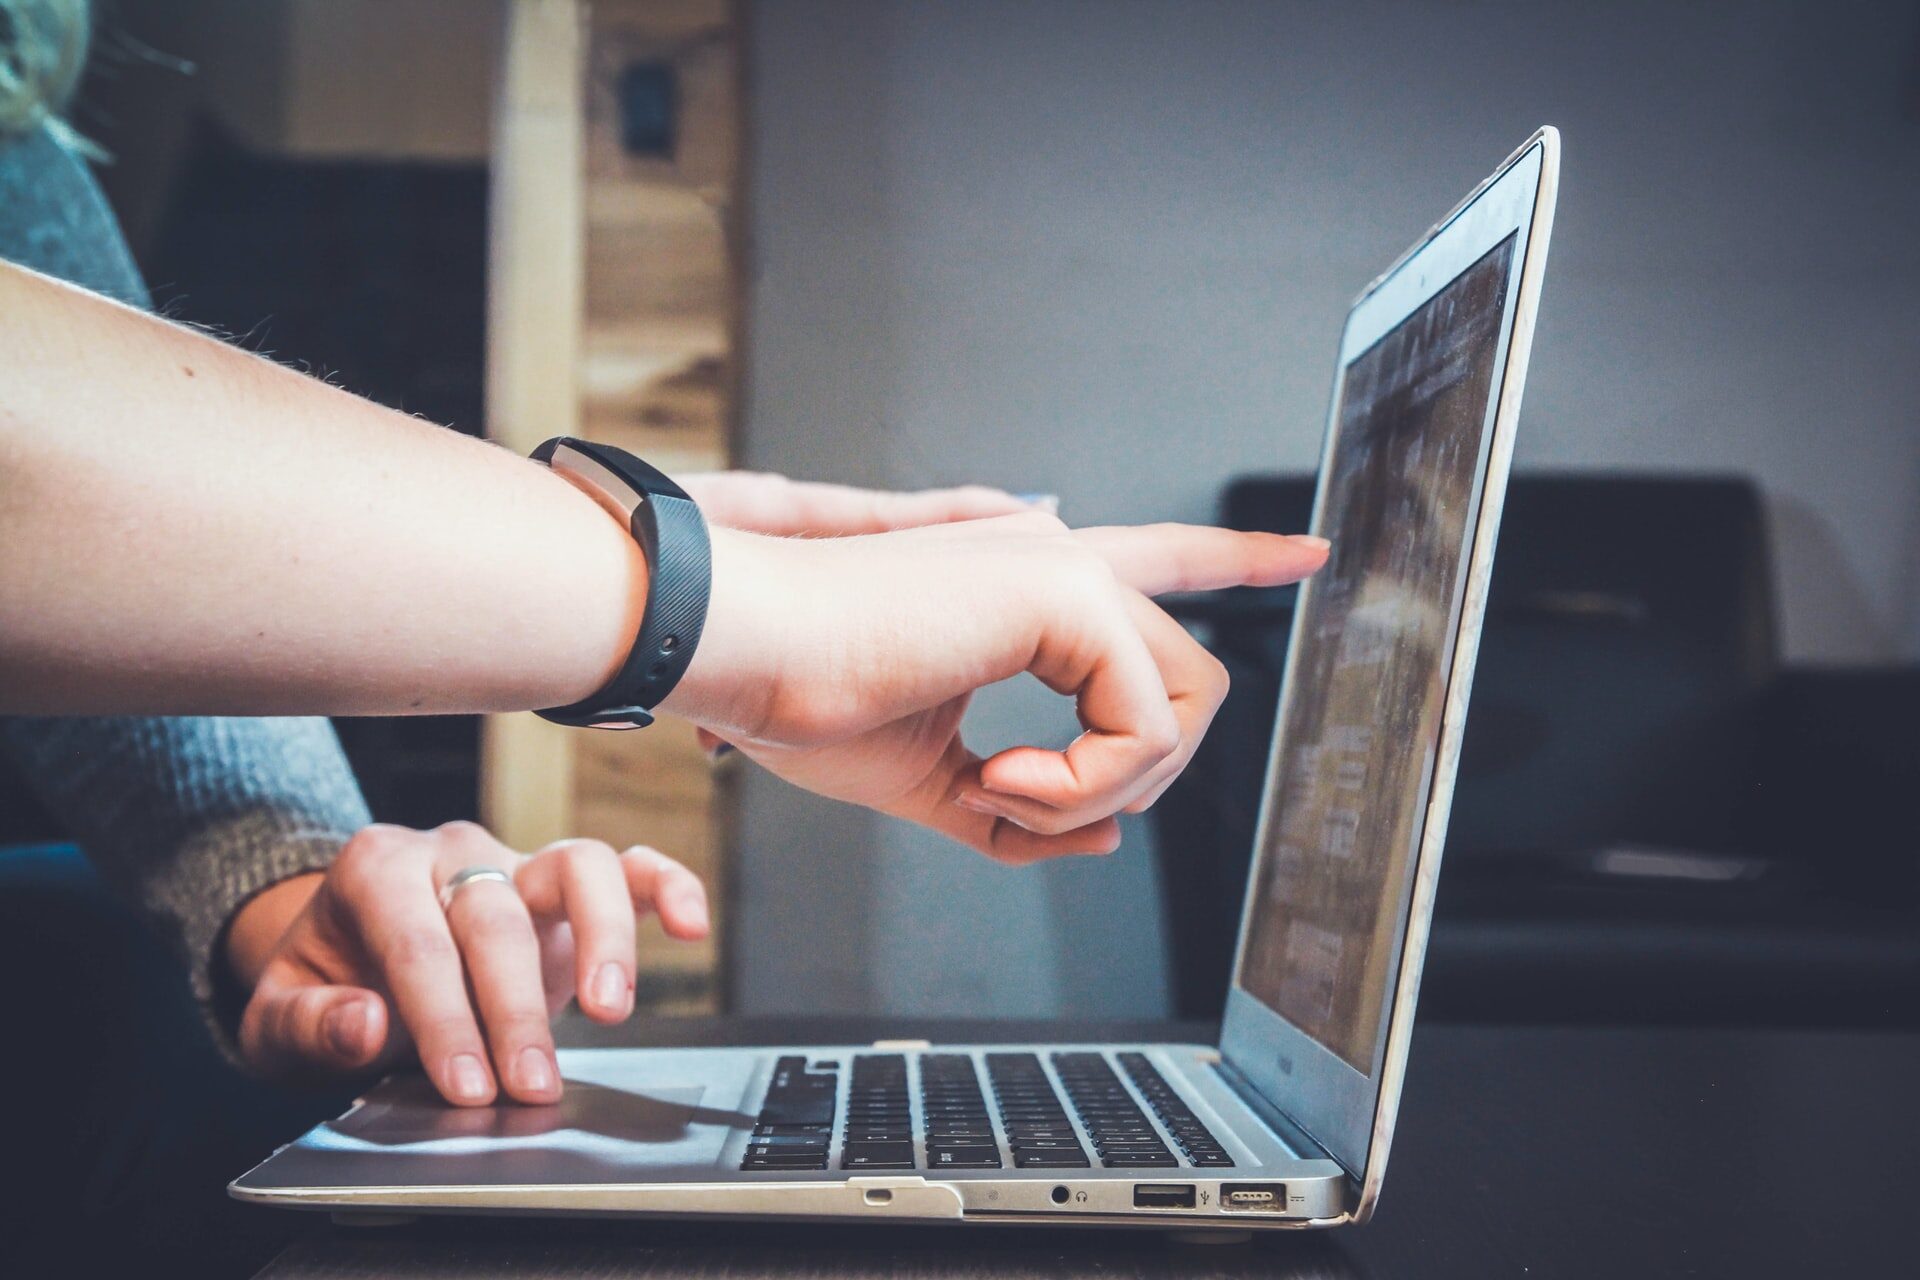 Zdjęcie przedstawia laptop oraz dłonie należące do dwóch różnych osób. Jedna dłoń przybliża się do ekranu komputera, wskazując coś palcem.